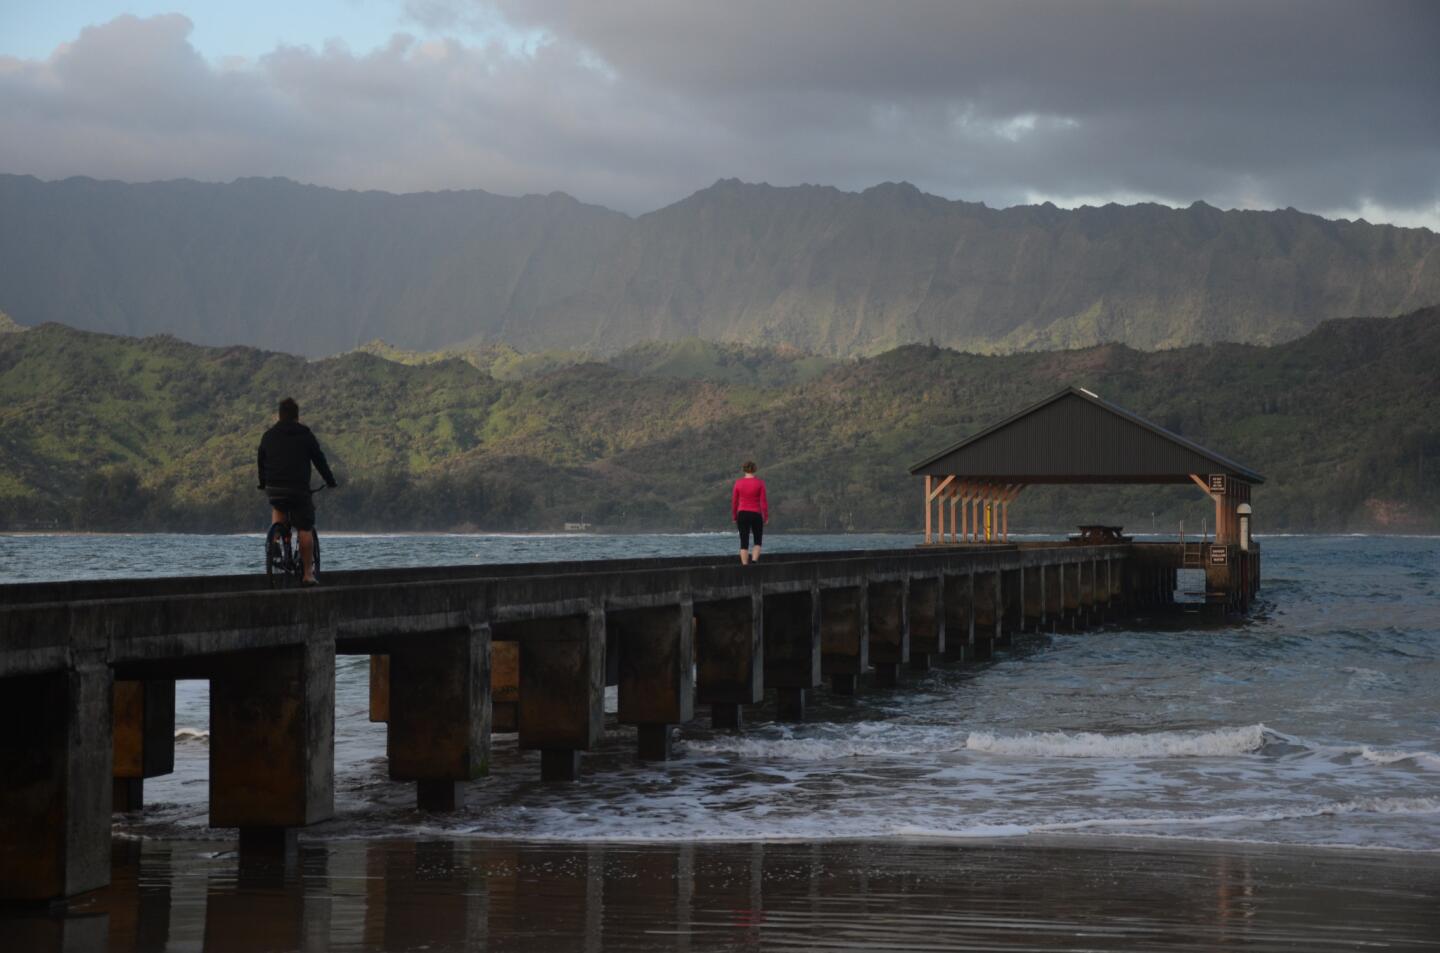 Hawaii: Pier walk